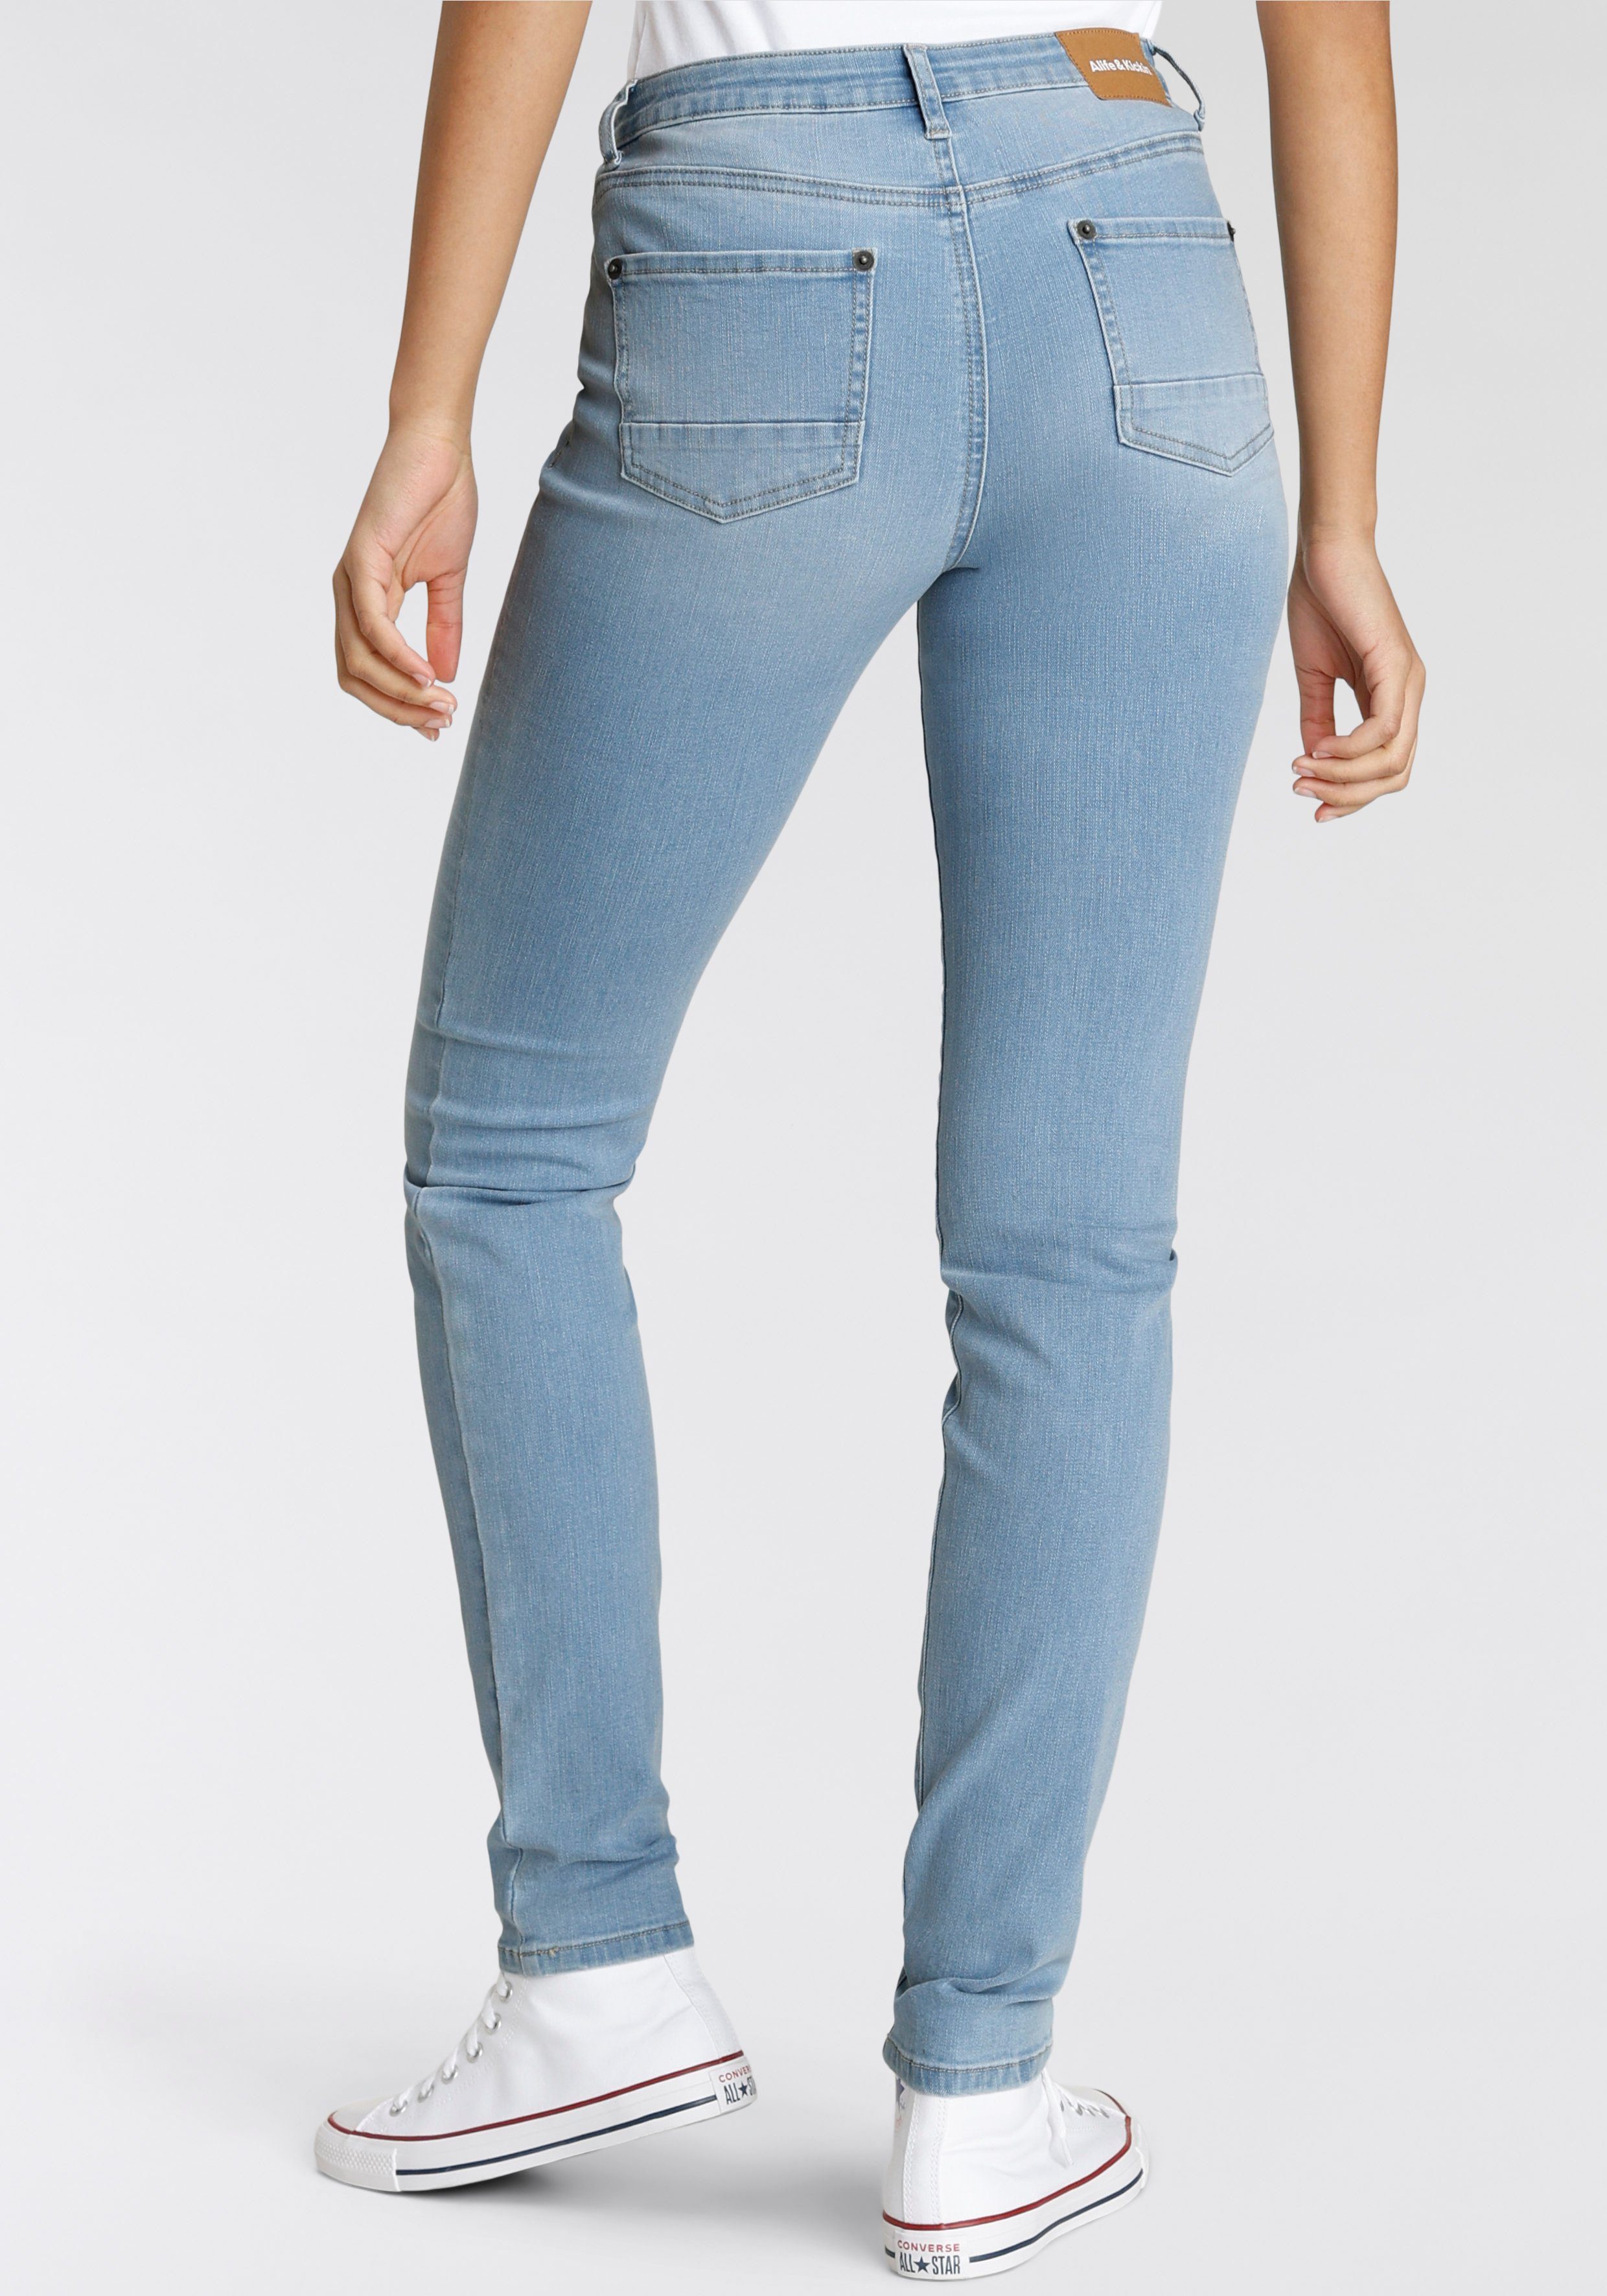 Alife & Kickin High-waist-Jeans KOLLEKTION used NEUE Slim-Fit NolaAK light blue